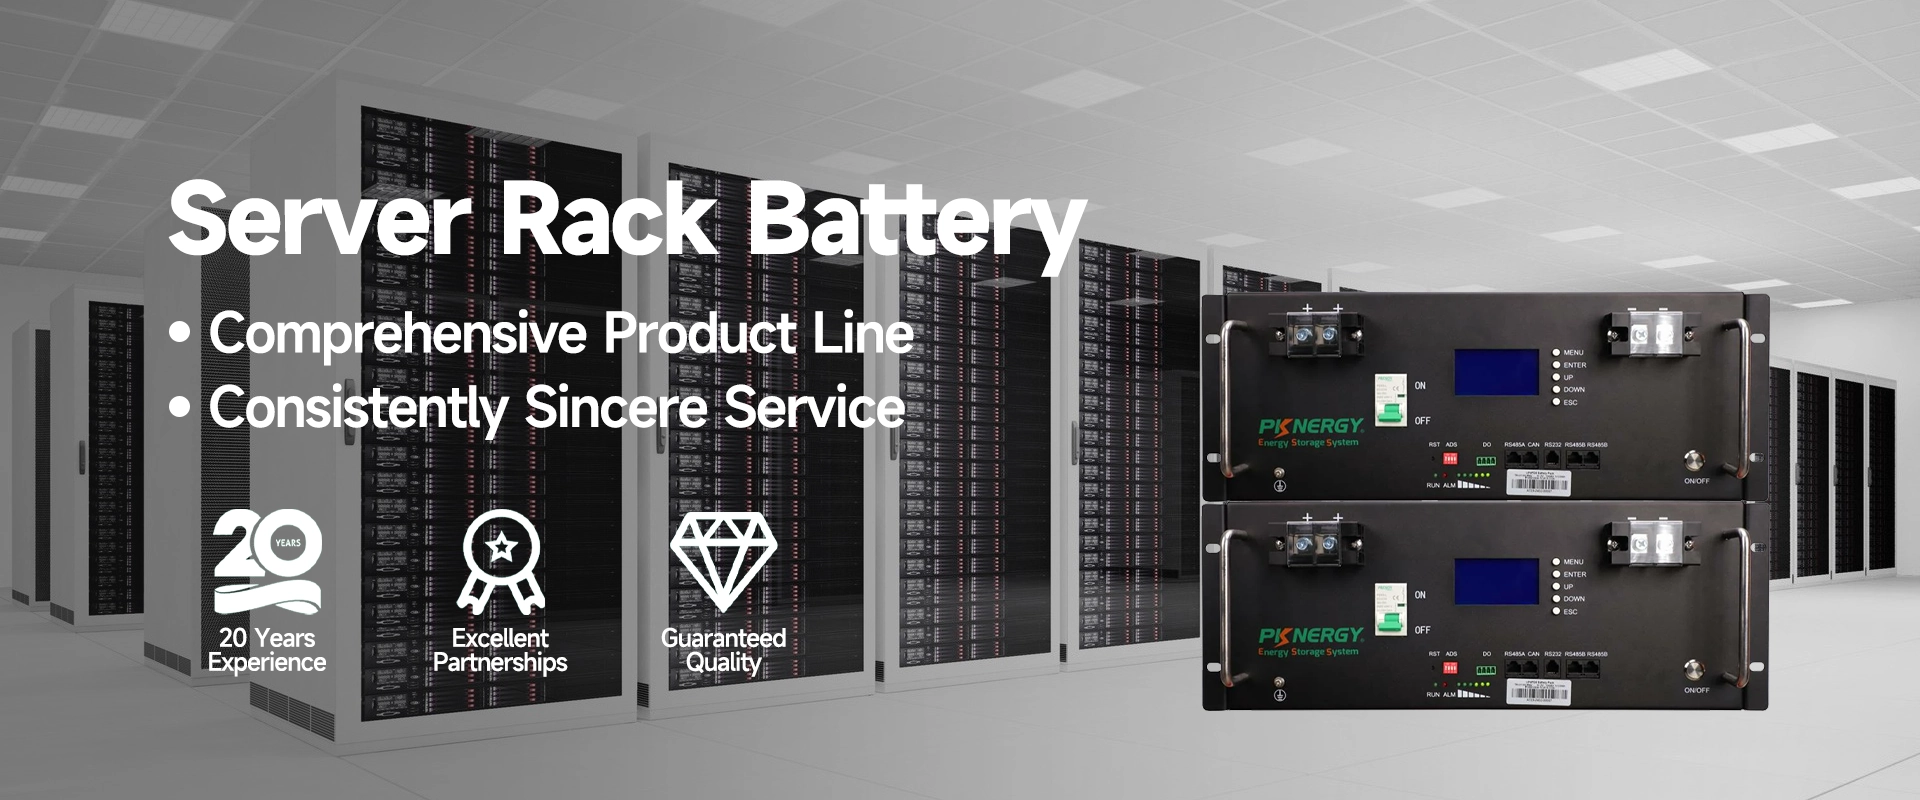 20year Server Rack Battery factory - pknergy